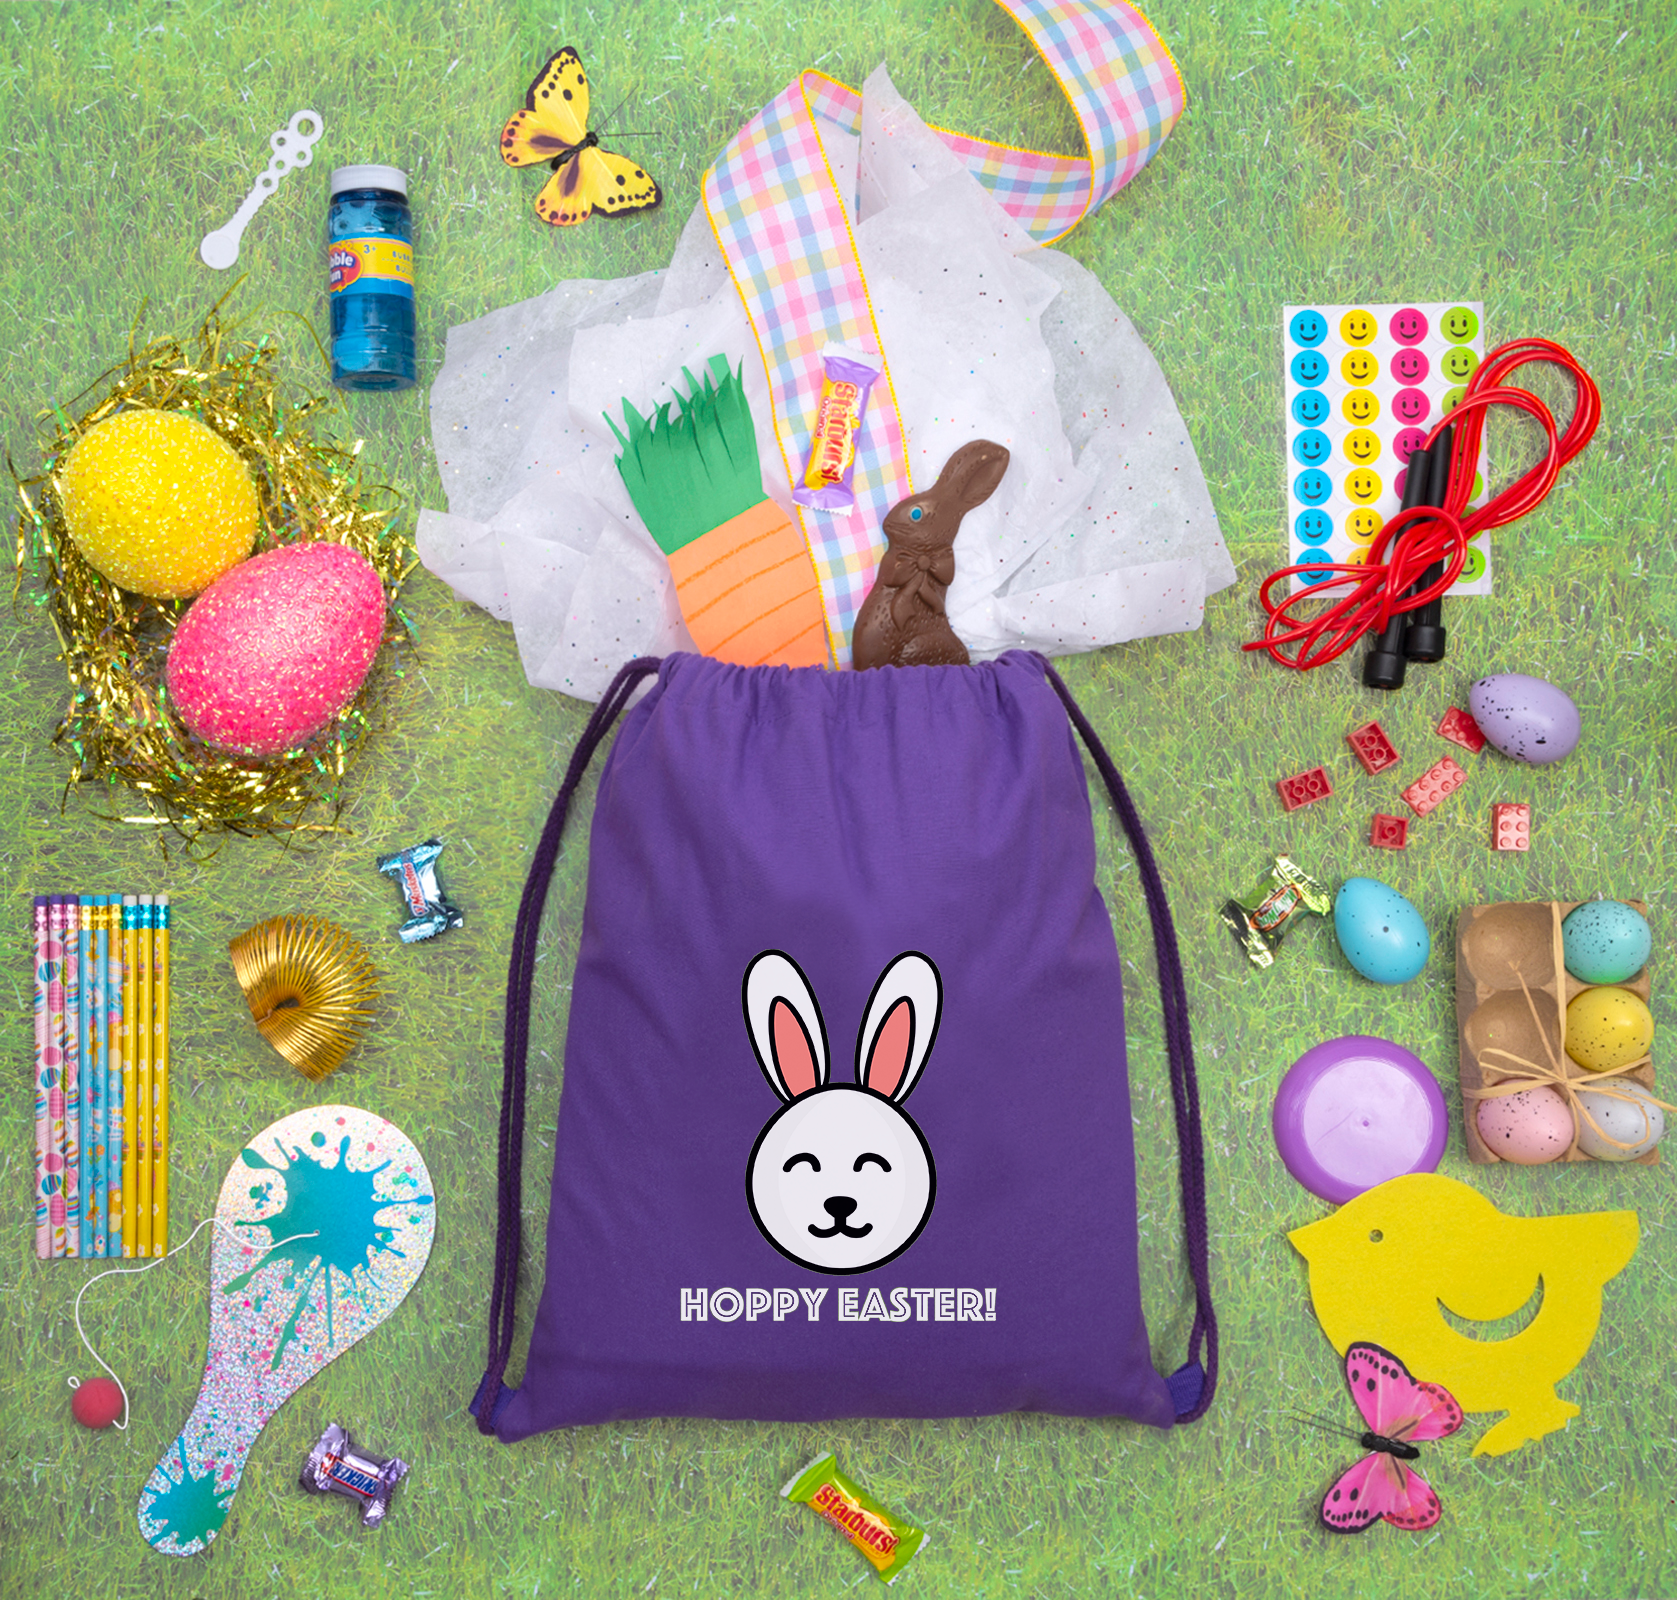 Hoppy Easter! Cotton Drawstring Bag